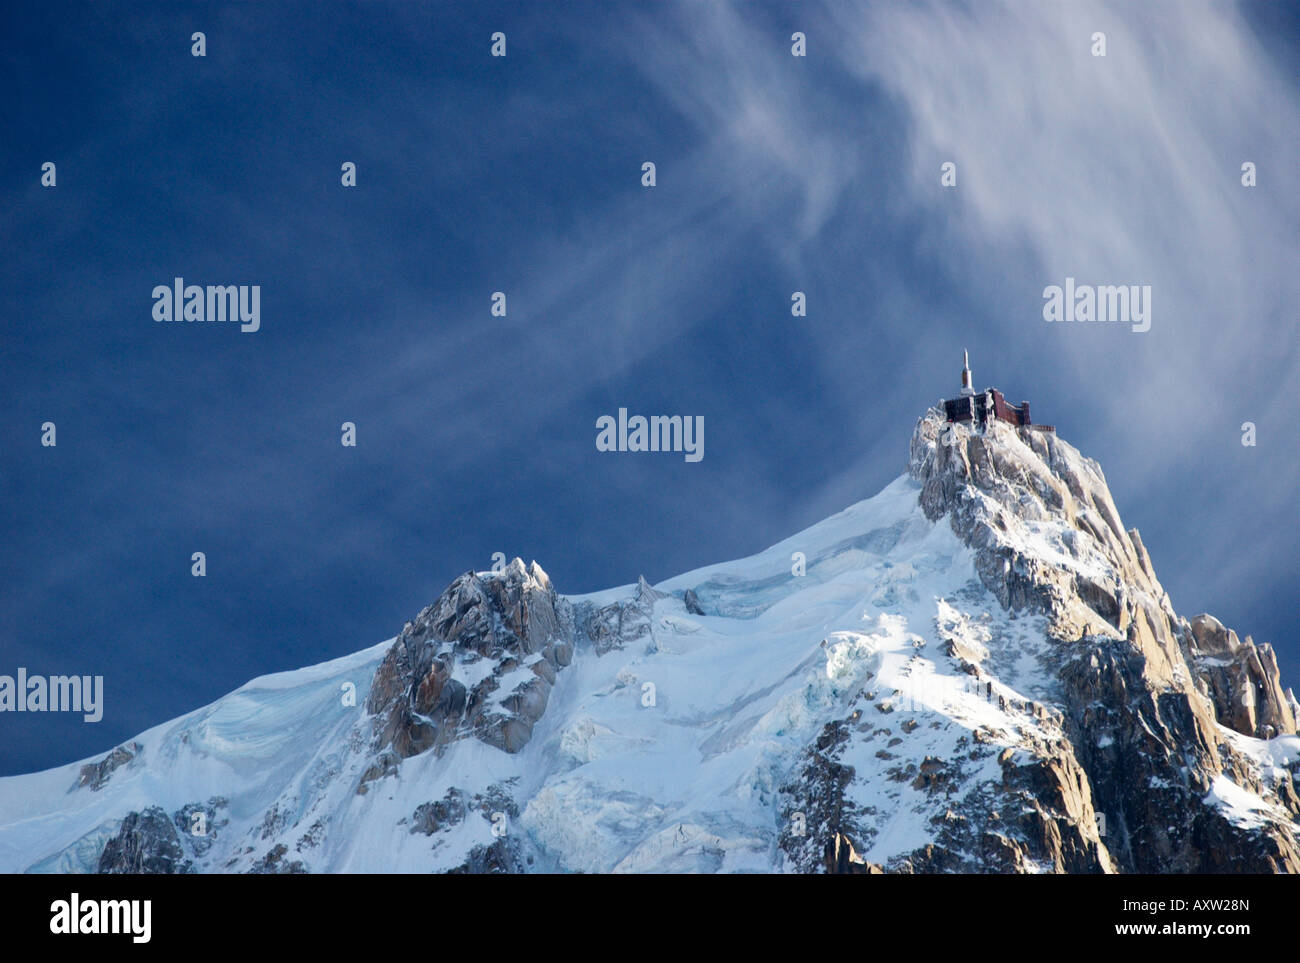 Starke Winde und spektakuläre Wolken über gefrorene Nadel der Aiguille du Midi (3842m), Chamonix-Mont-Blanc, Frankreich Stockfoto